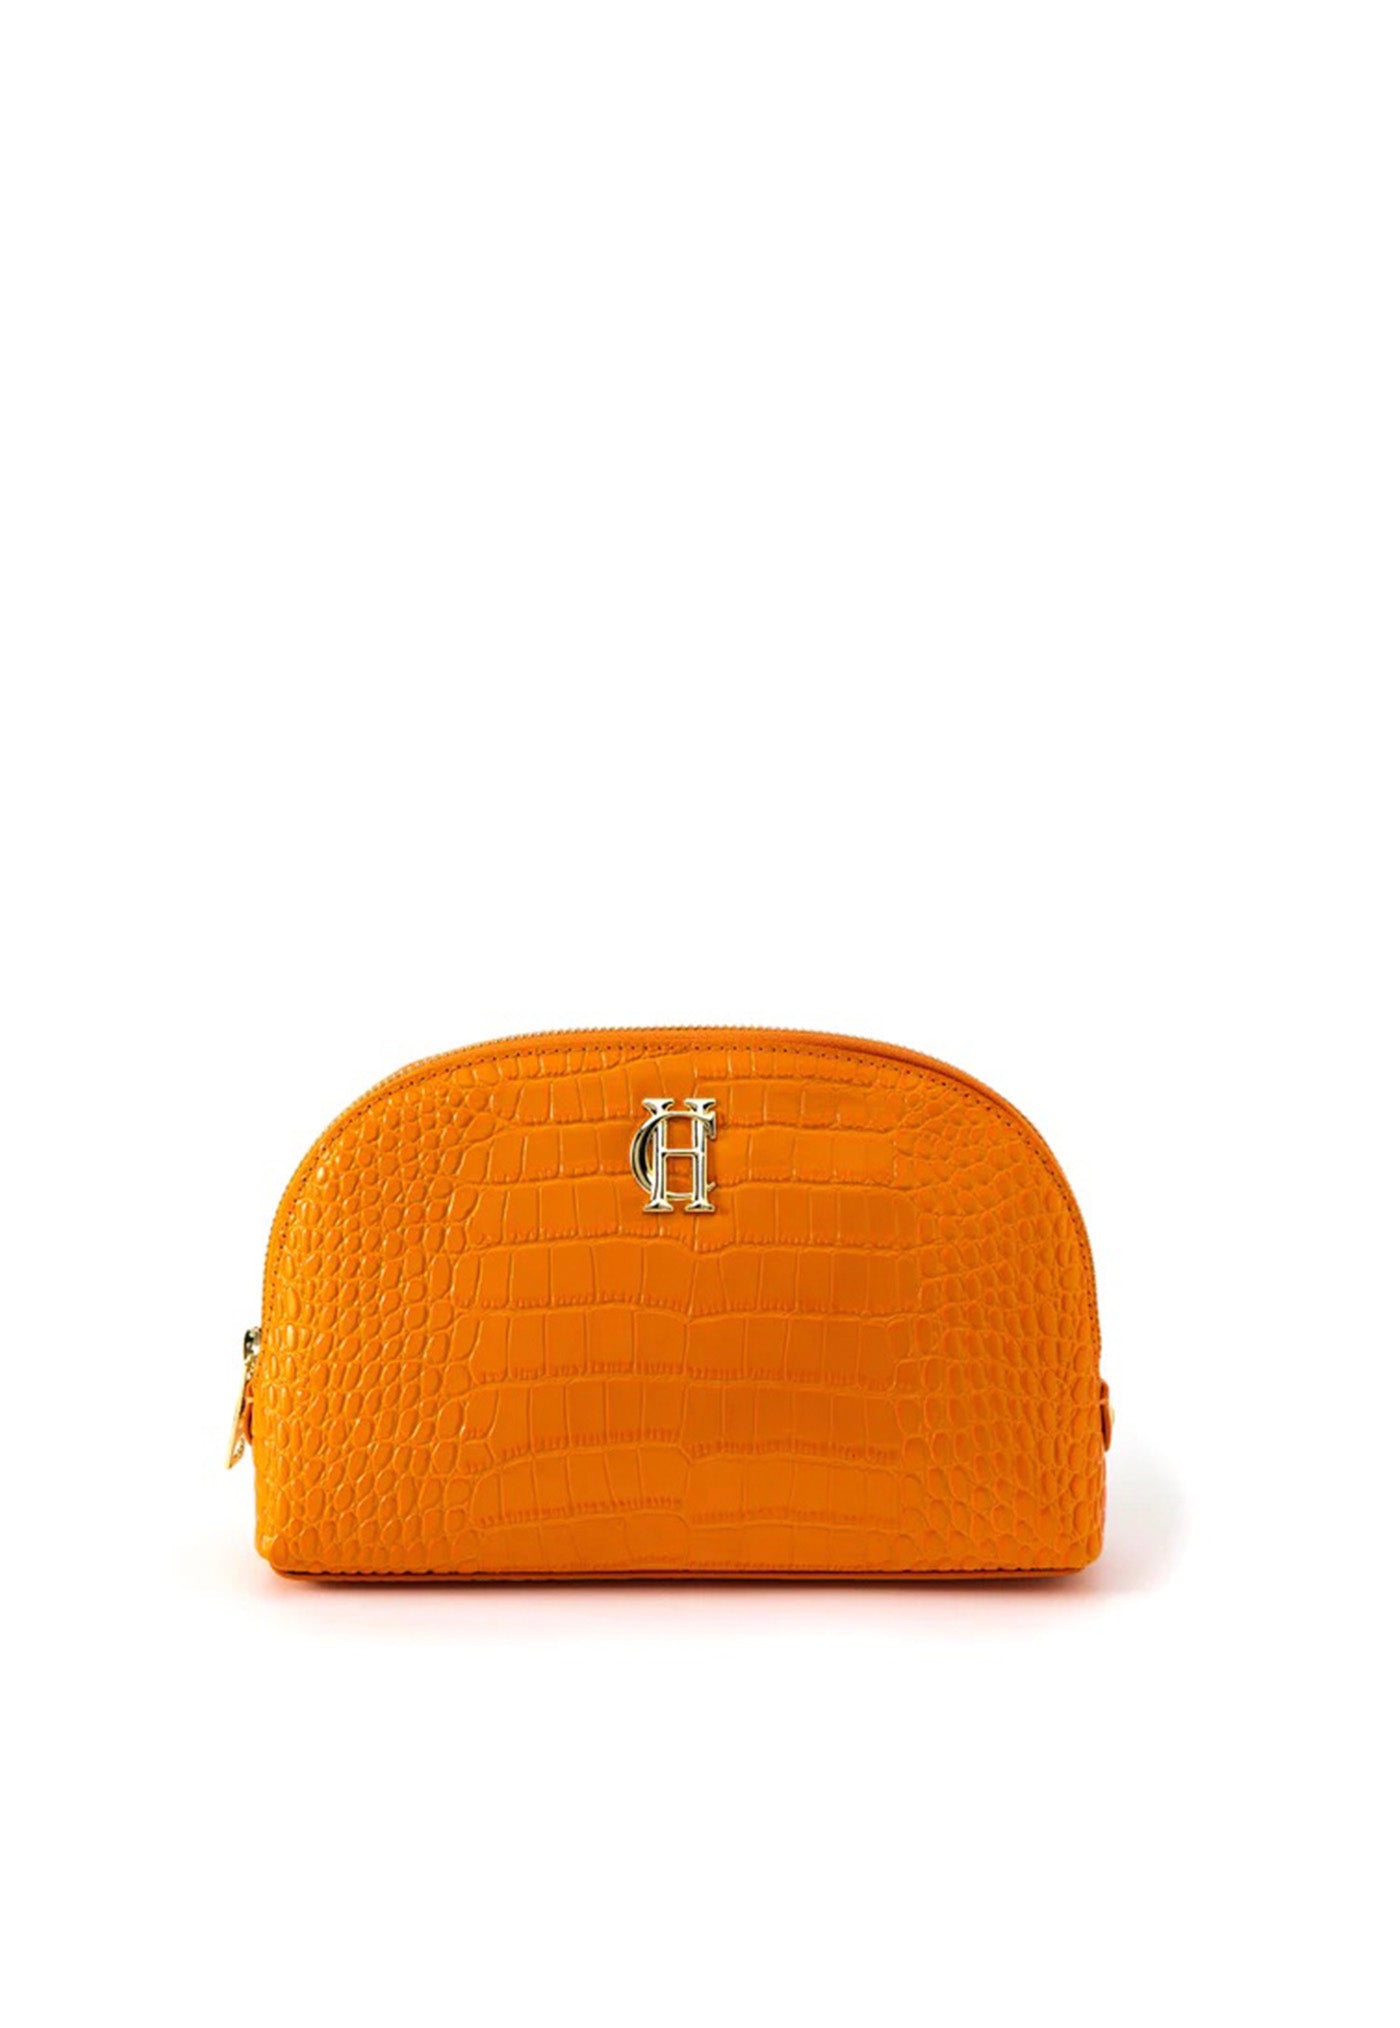 Chelsea Makeup Bag - Orange Croc sold by Angel Divine